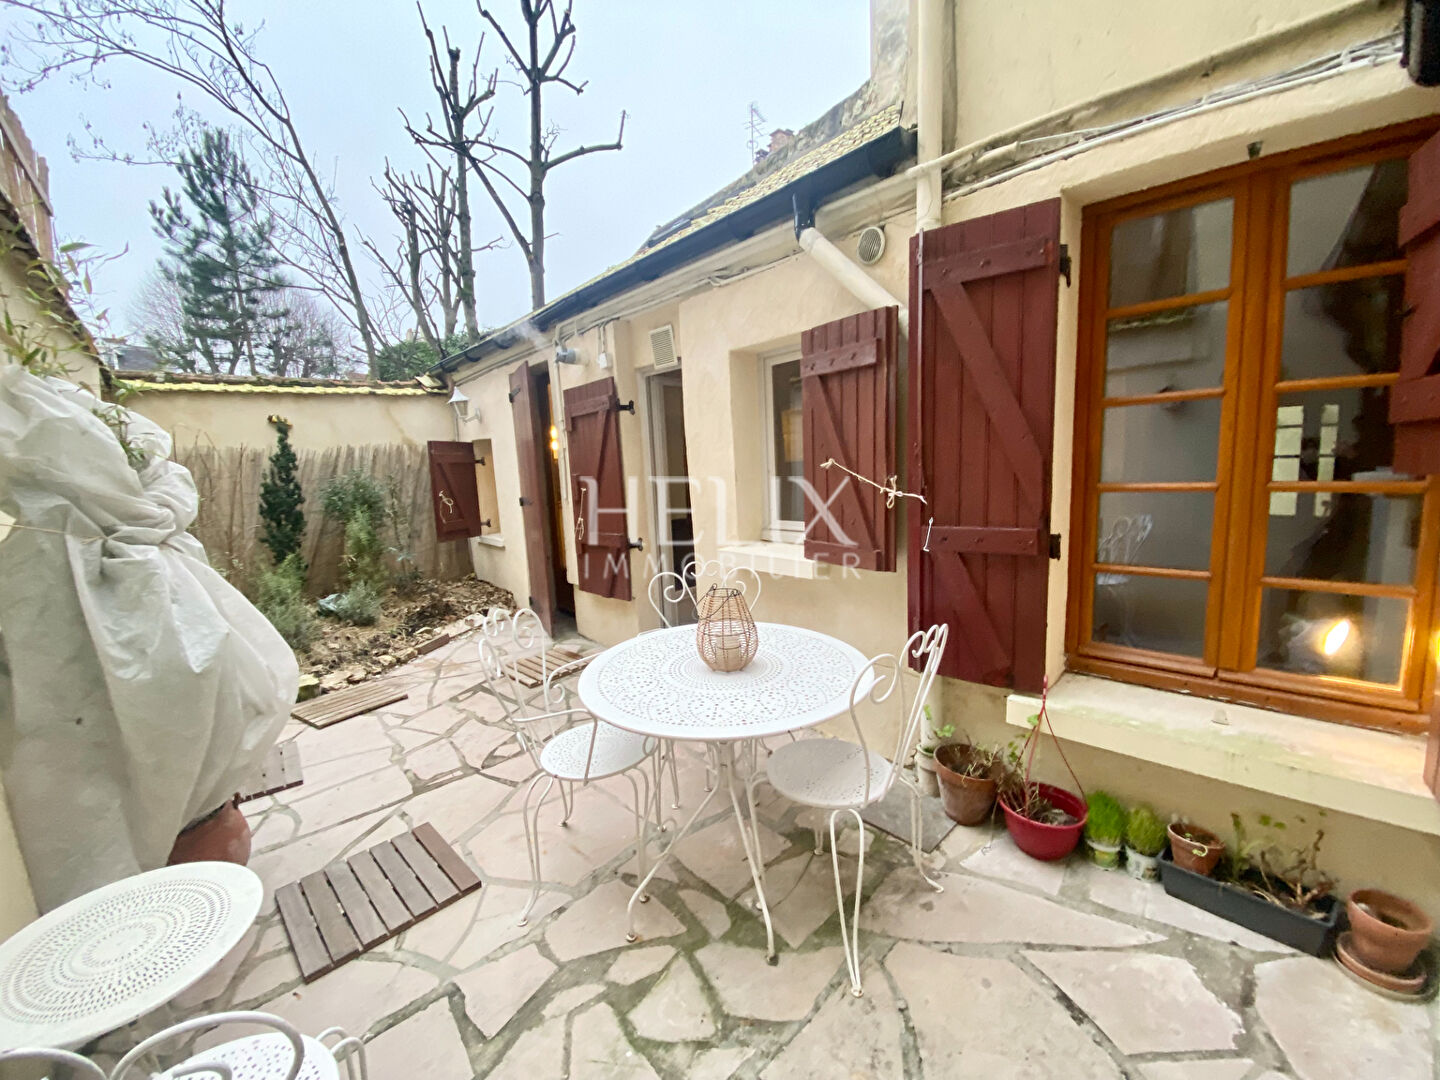 Appartement comme une petite maison avec terrasse Saint Germain En Laye². 3 pièce(s) de 43.72M